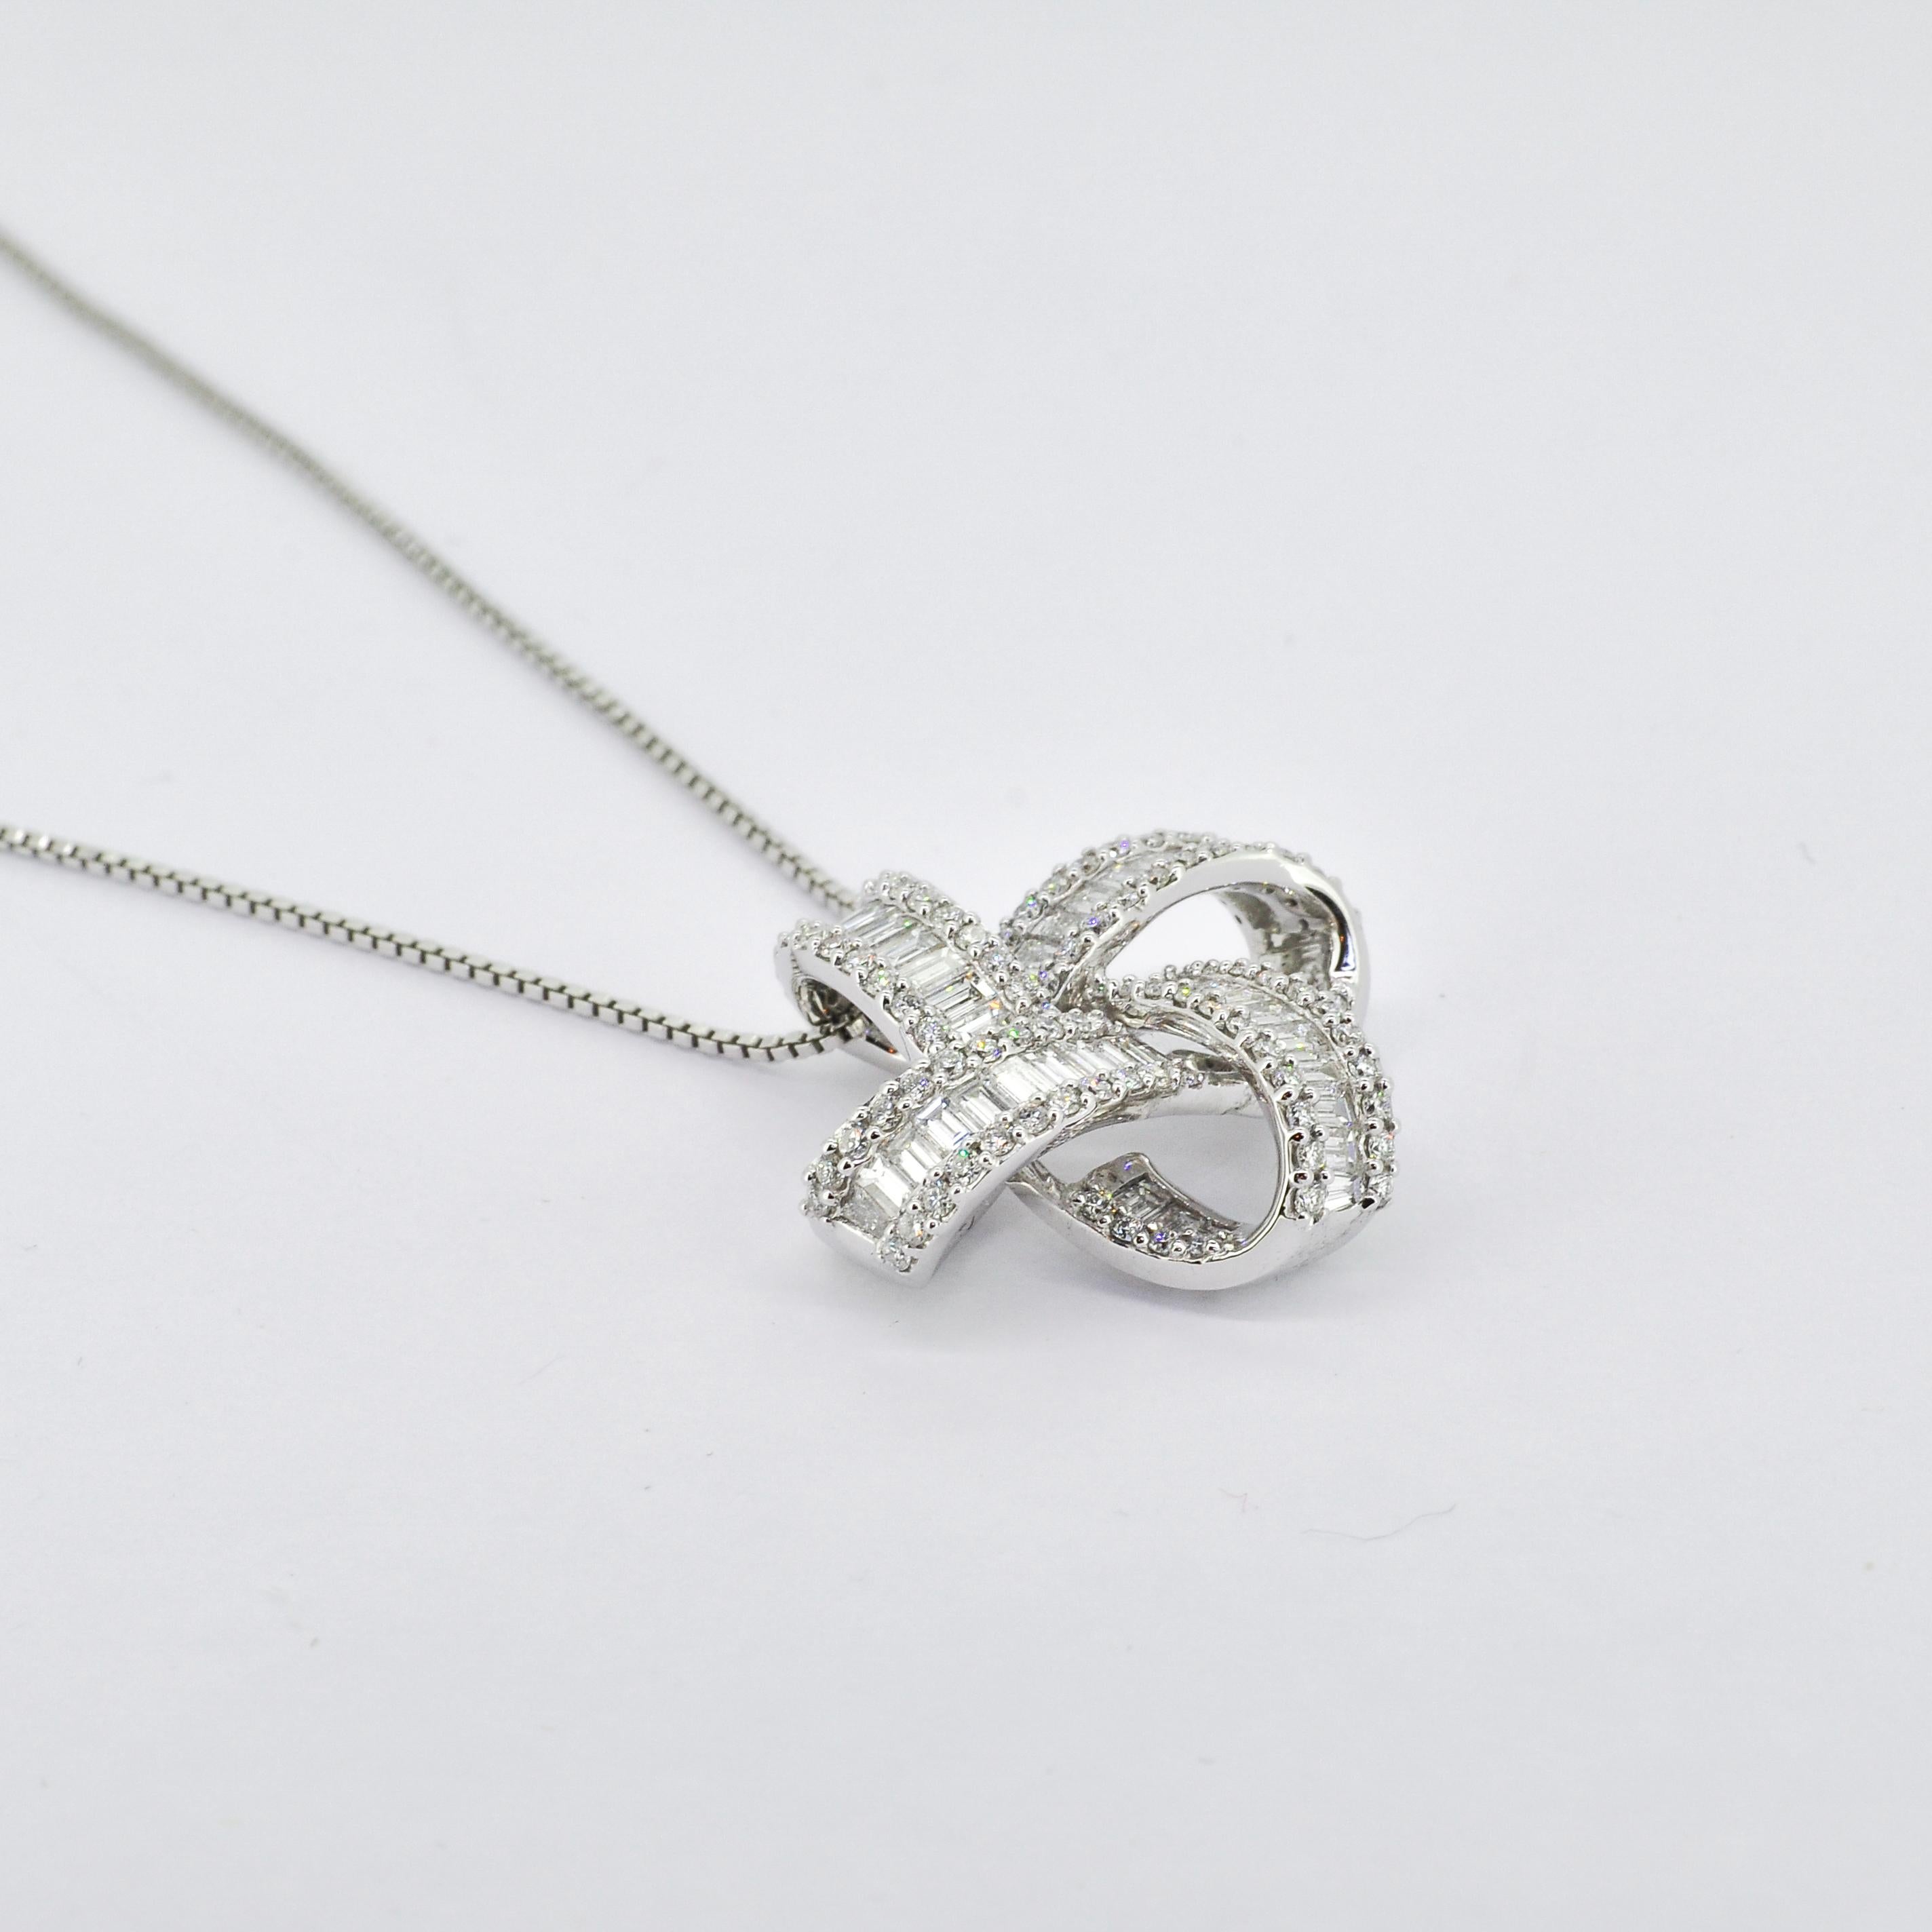 Elegamment conçu en or blanc 18 carats, ce collier pendentif présente un mélange harmonieux de diamants ronds et baguettes, disposés avec art pour maximiser la brillance et l'éclat. 

Plongez dans l'allure fabuleuse et spectaculaire de cet